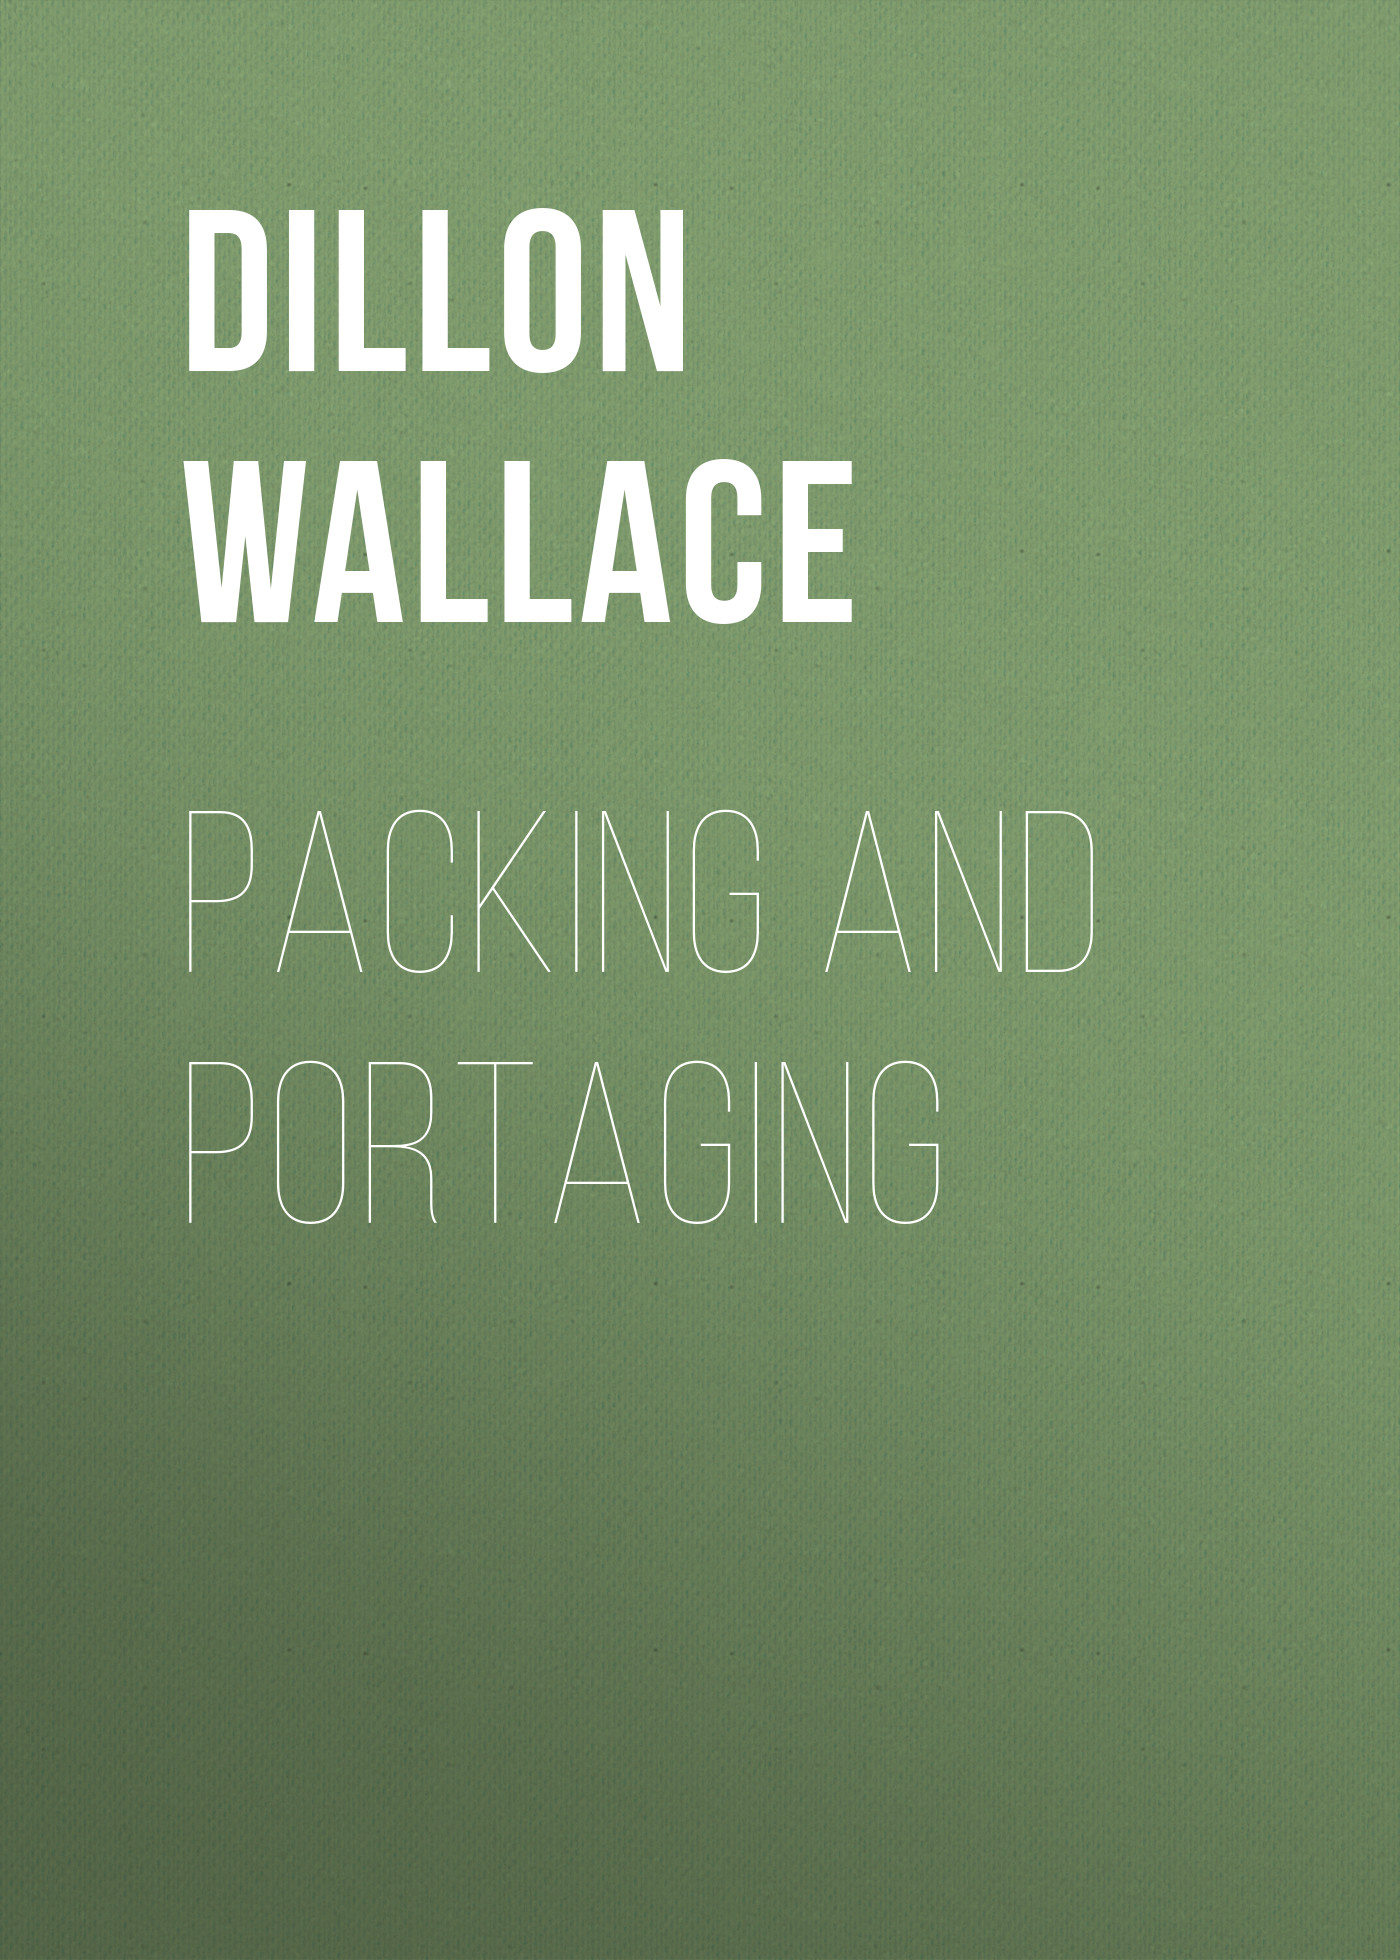 Книга Packing and Portaging из серии , созданная Dillon Wallace, может относится к жанру Зарубежная образовательная литература, Биология, Хобби, Ремесла. Стоимость электронной книги Packing and Portaging с идентификатором 34282736 составляет 0 руб.